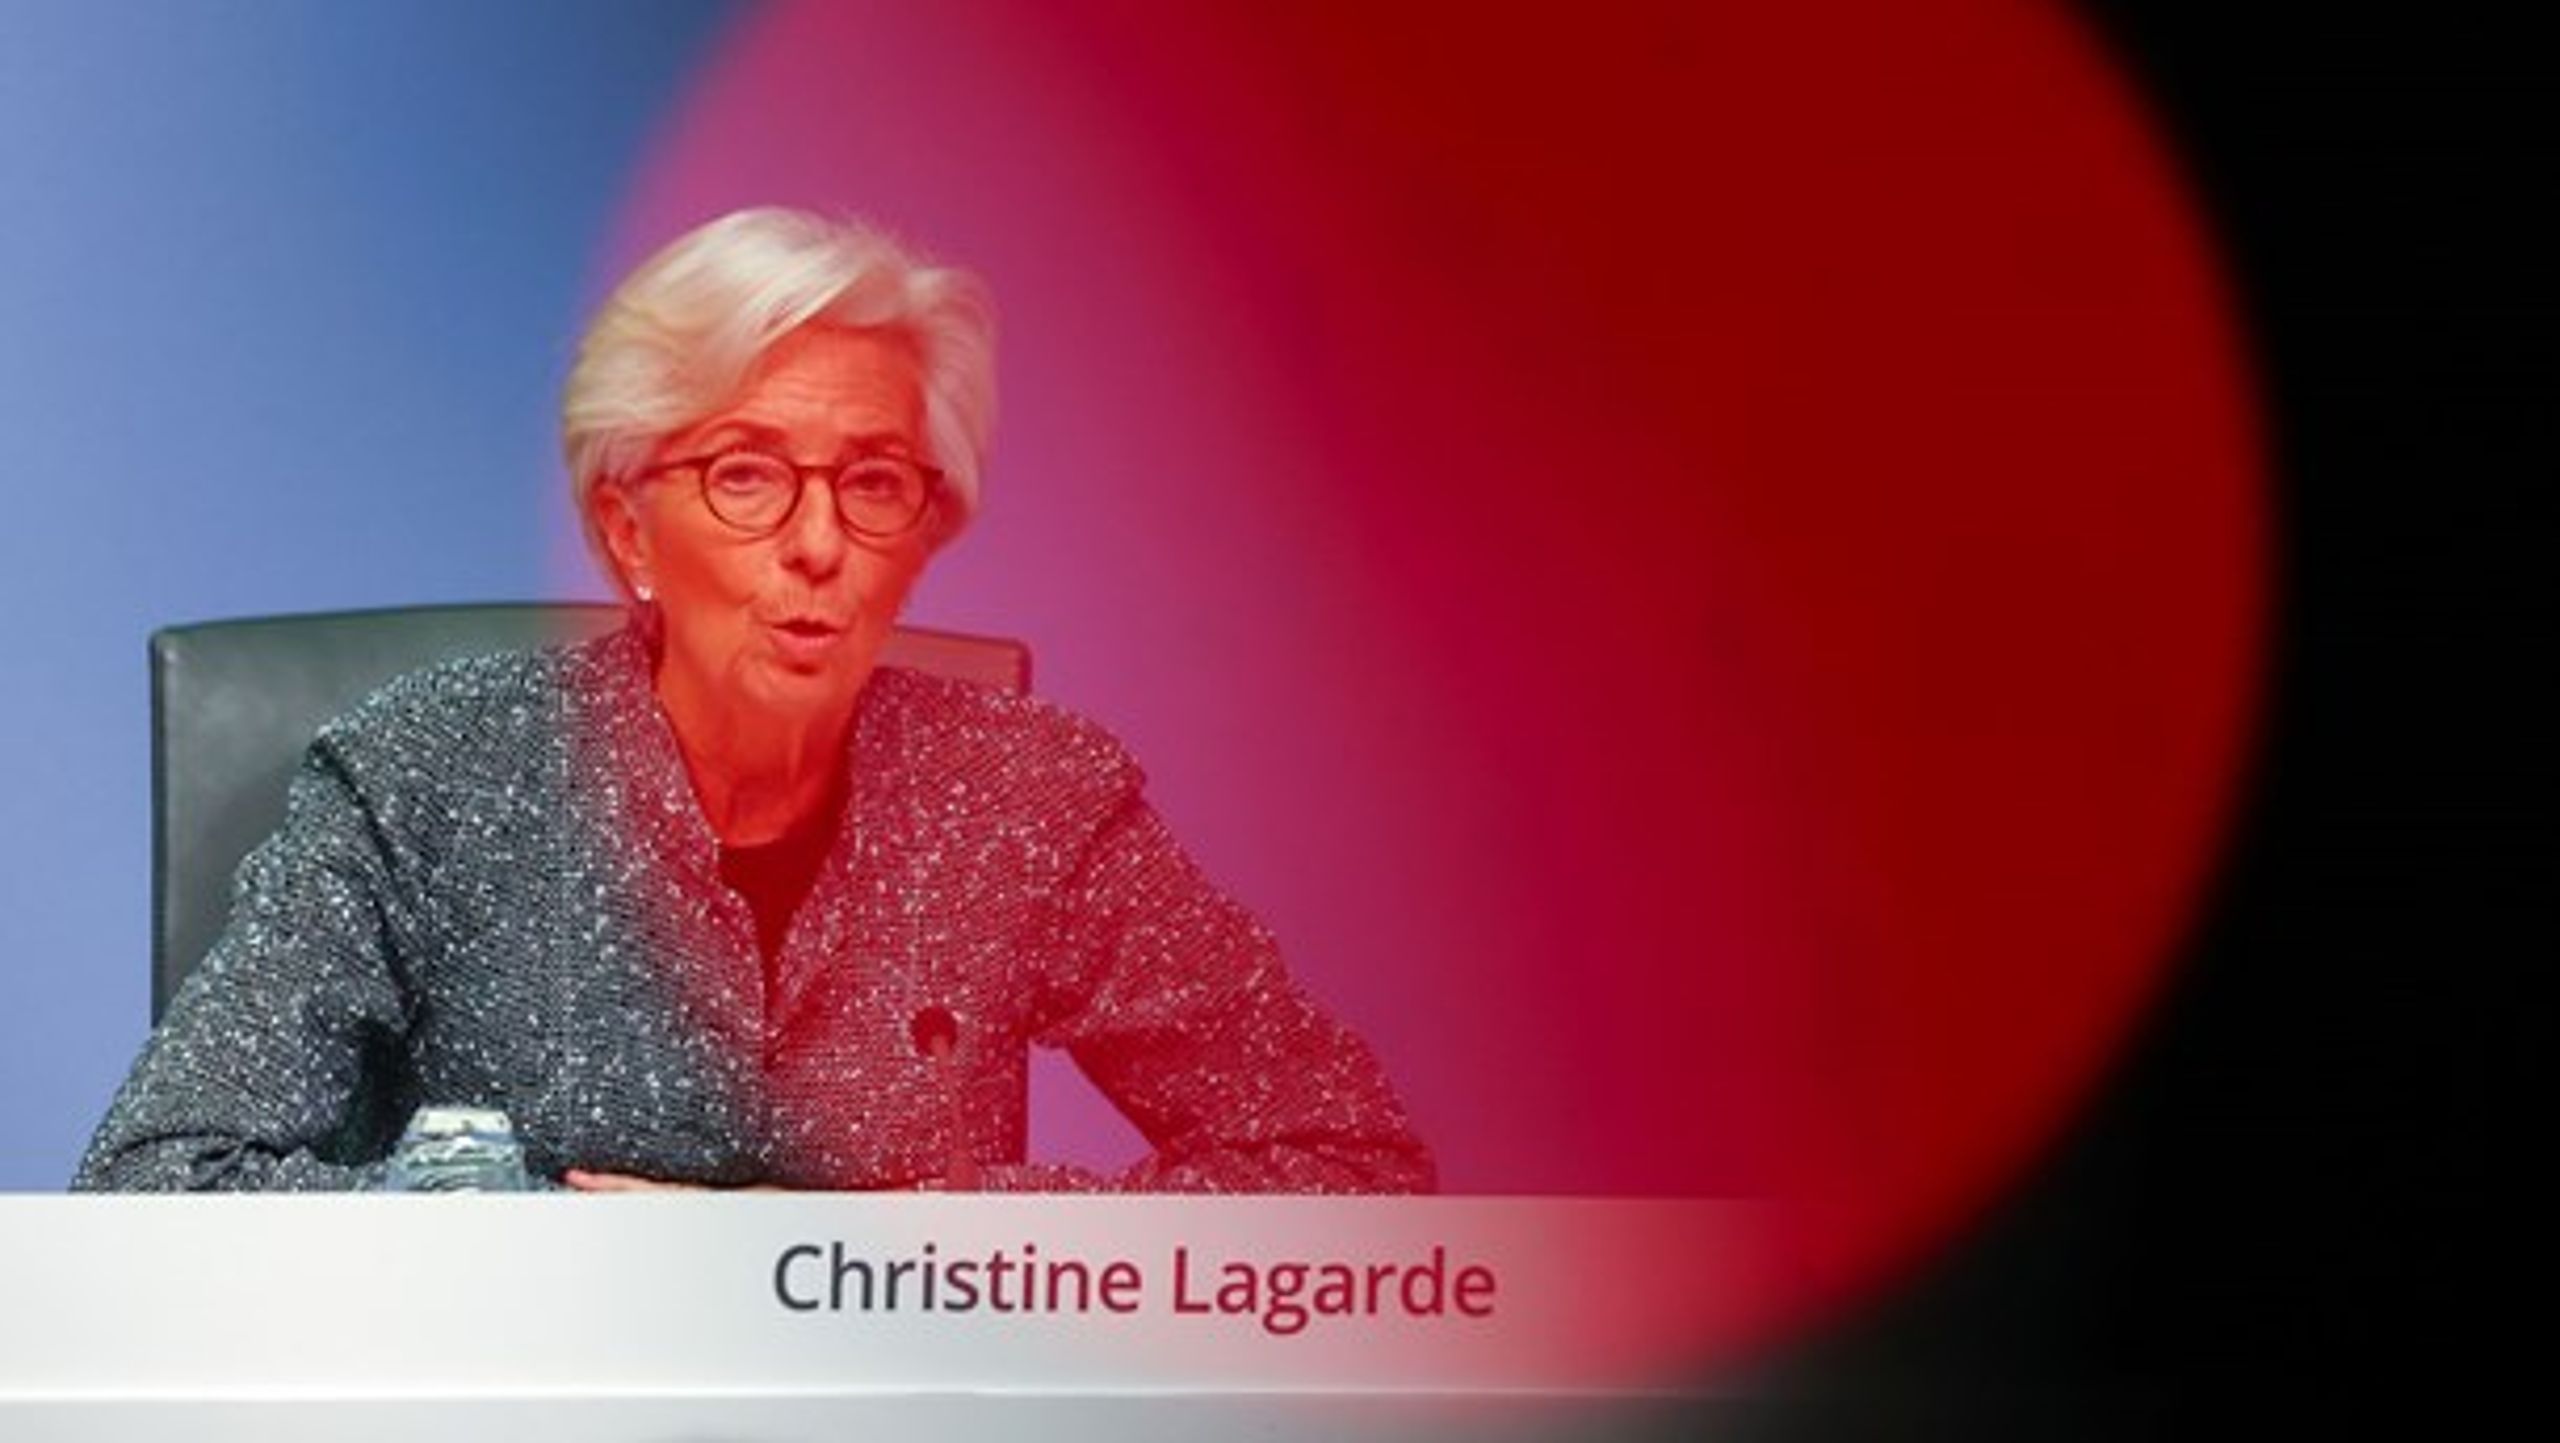 Den Europæiske Centralbanks præsident, Christine Lagarde, har sammen med en række EU-lande taget det store økonomiske skyts frem i kampen mod corona, skriver Peter Nedergaard.